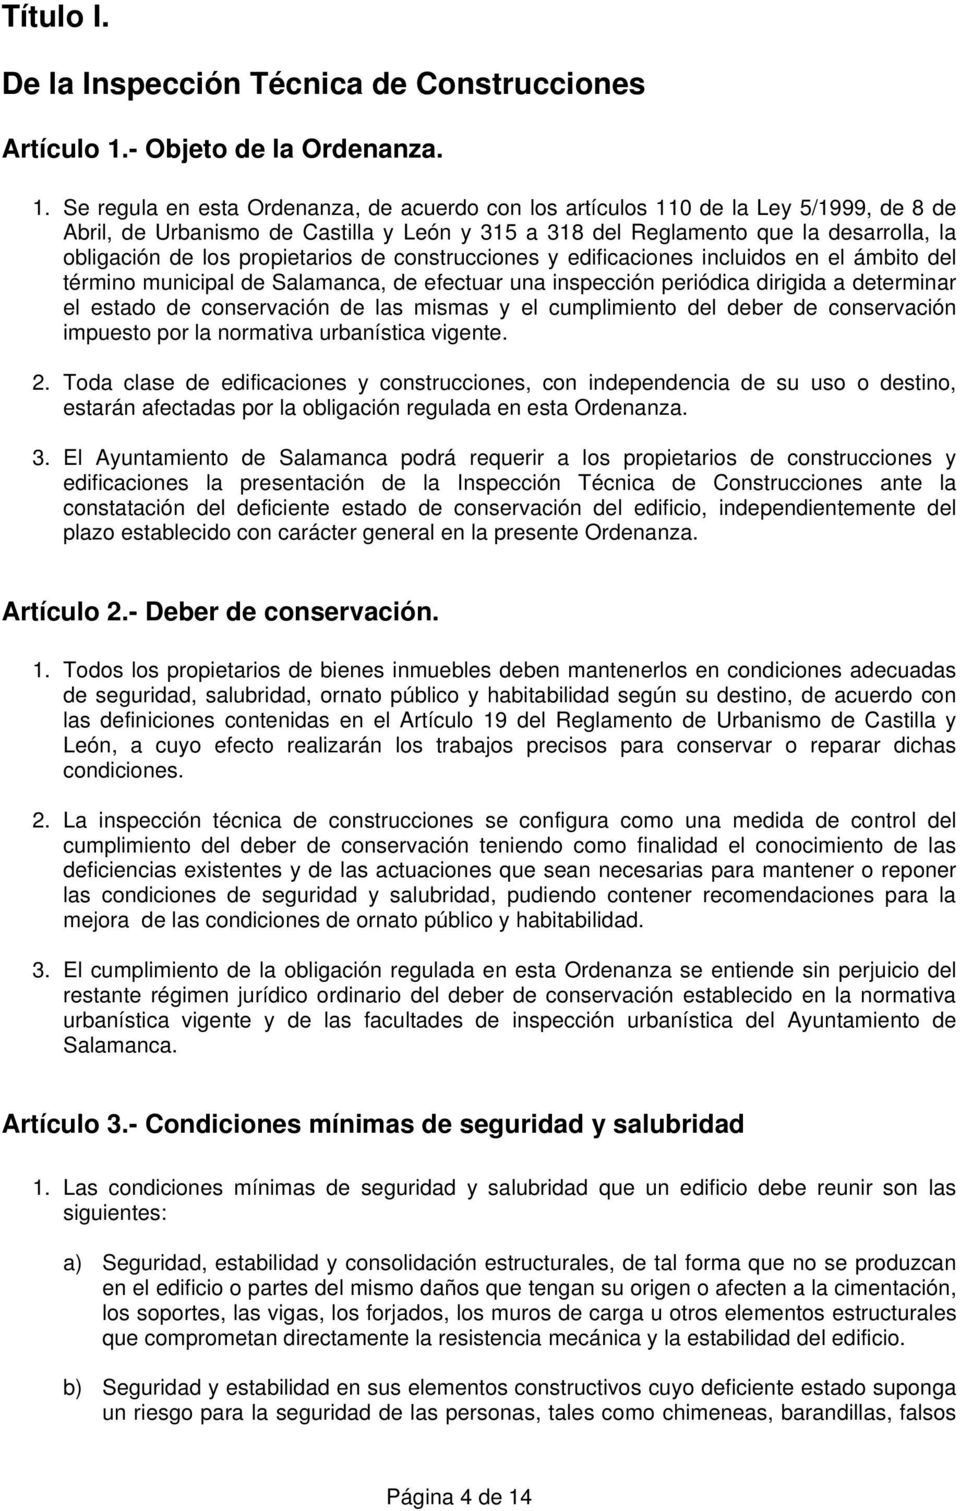 Se regula en esta Ordenanza, de acuerdo con los artículos 110 de la Ley 5/1999, de 8 de Abril, de Urbanismo de Castilla y León y 315 a 318 del Reglamento que la desarrolla, la obligación de los